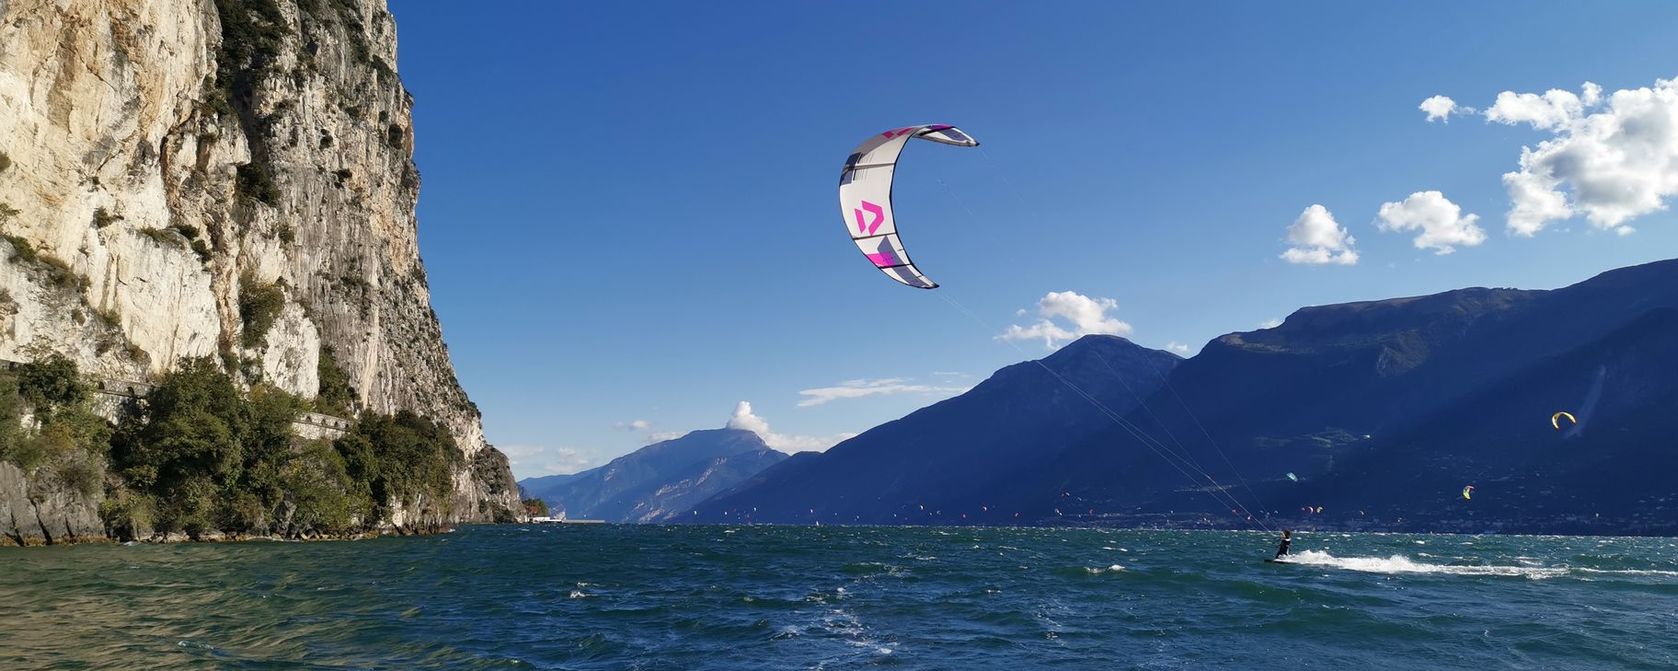 Kitesurfing lessons Lake Garda Italy